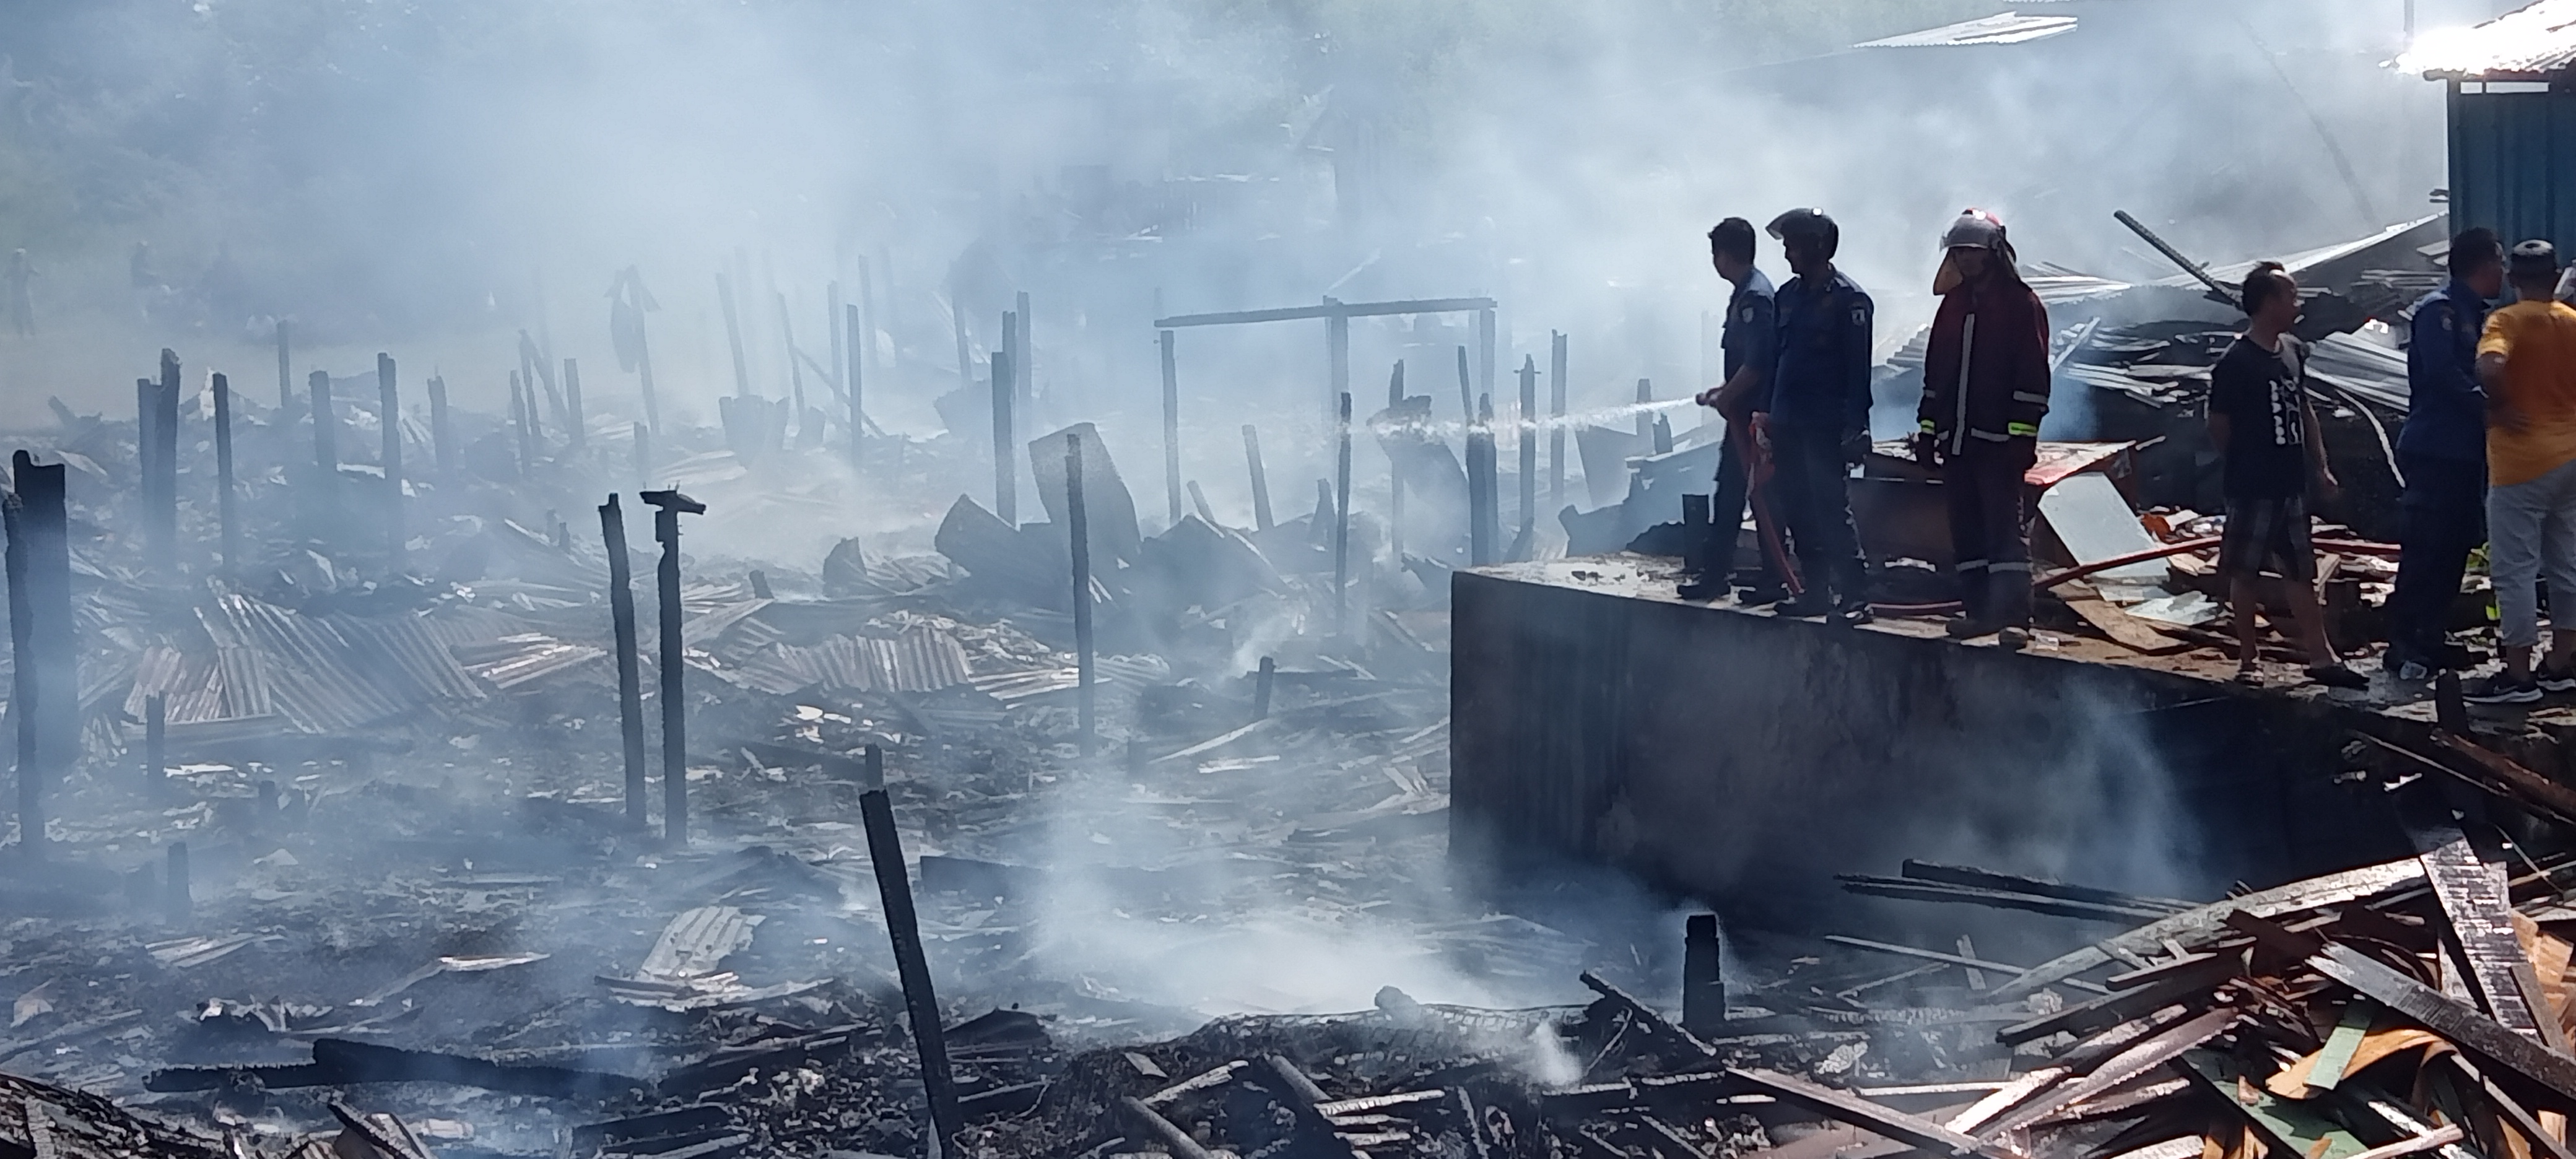 Kerugian dari Insiden Kebakaran di Kelurahan Legok, Ditaksir Hingga 1 Miliar Lebih